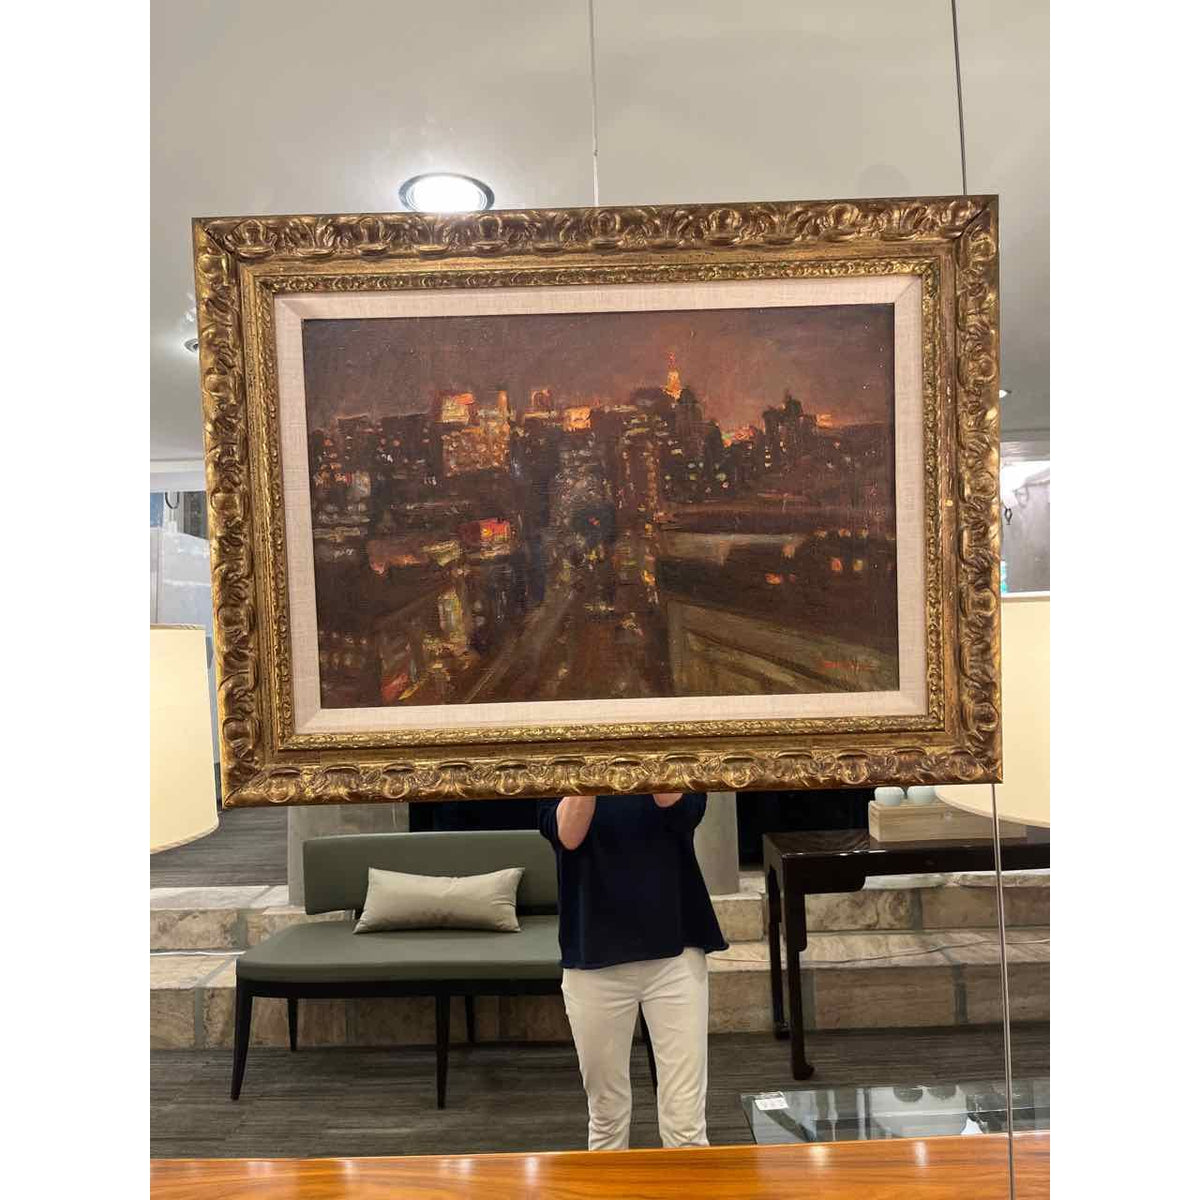 B. Lennon "New York Skyline" Oil on Canvas.